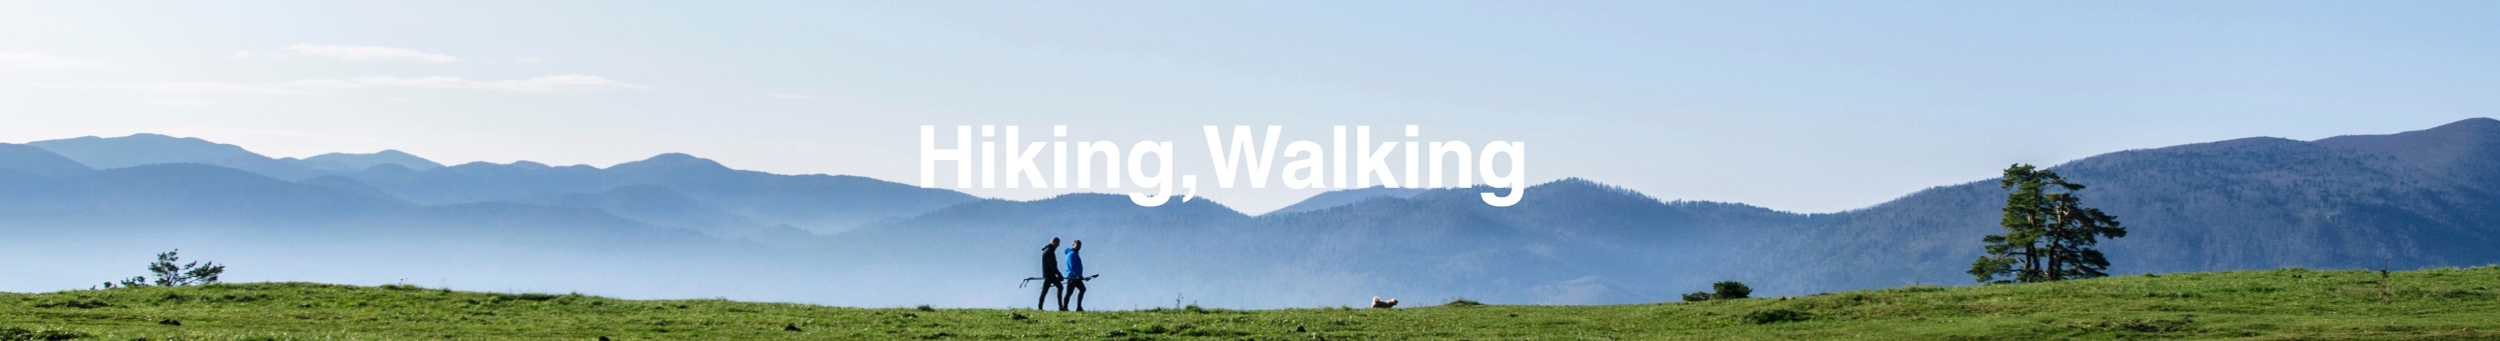 Hiking/Walking